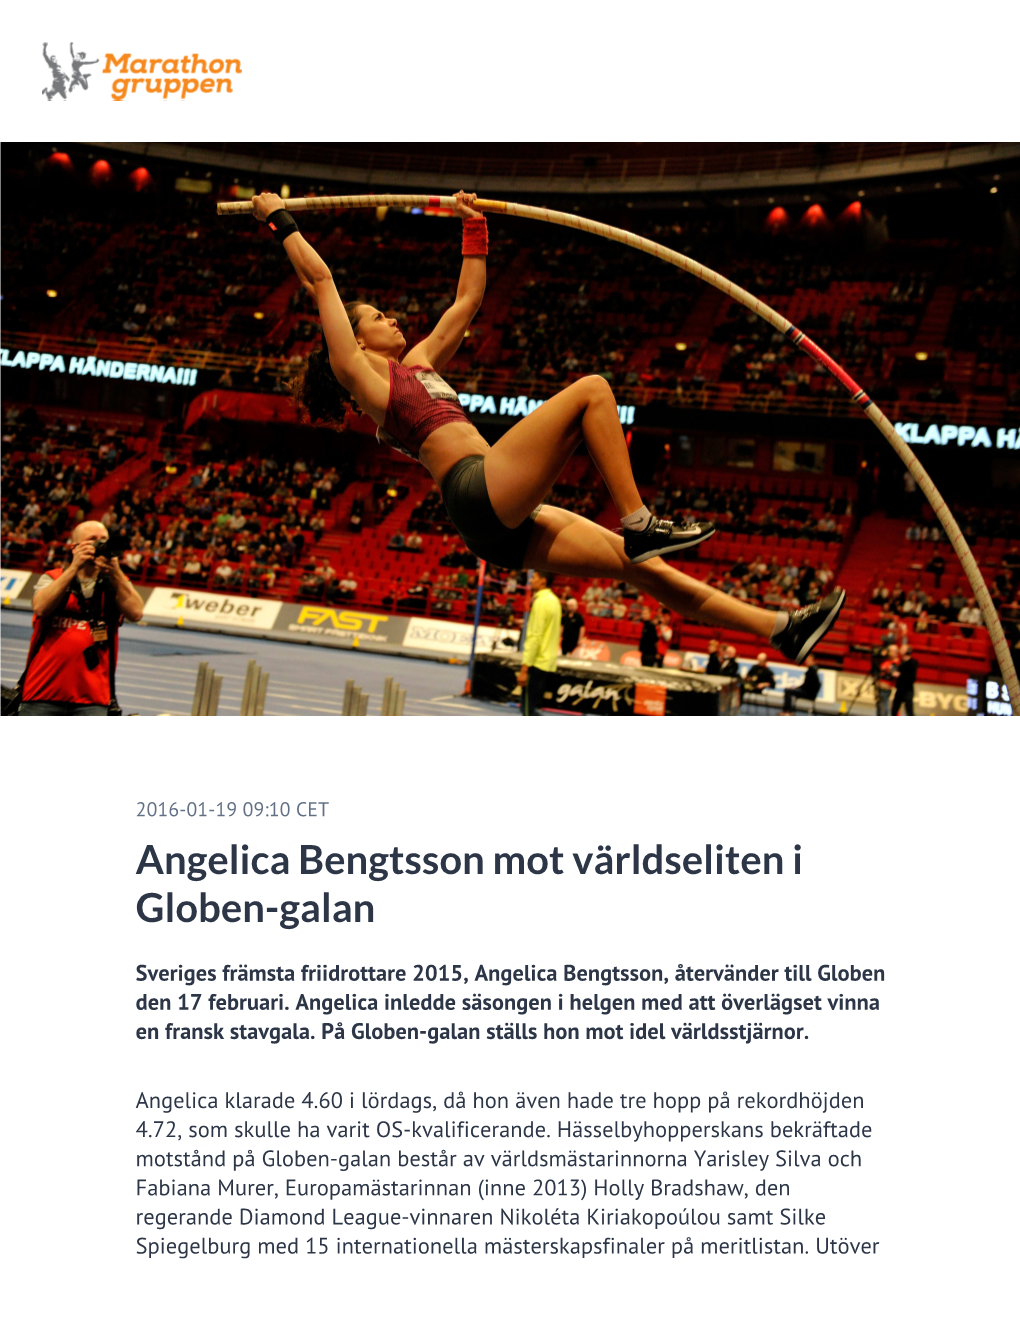 Angelica Bengtsson Mot Världseliten I Globen-Galan